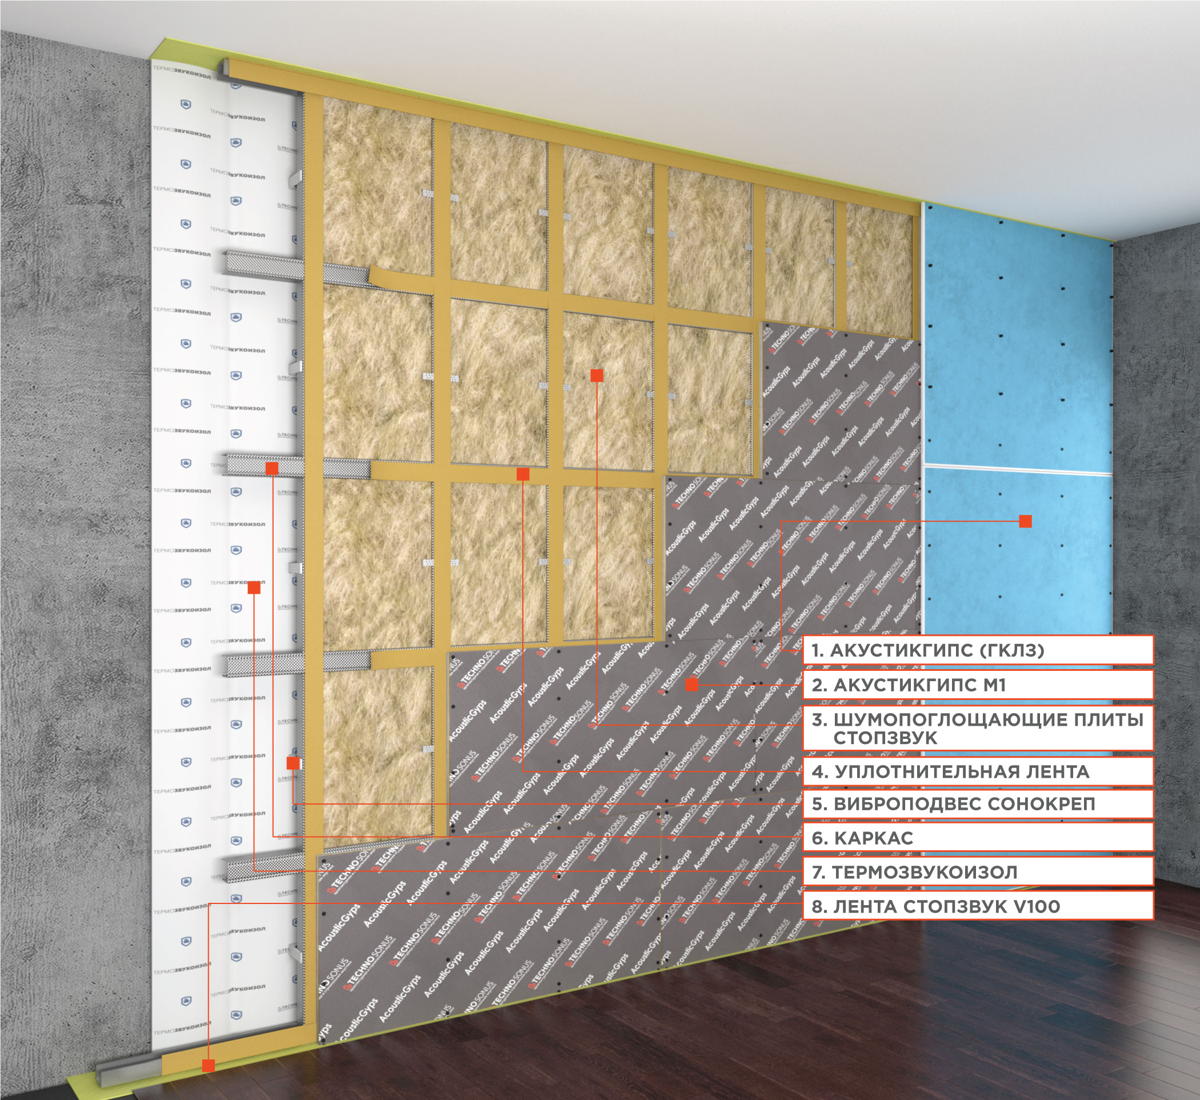 Каркасная звукоизоляция стен панелями АкустикГипс М1 схема монтажа